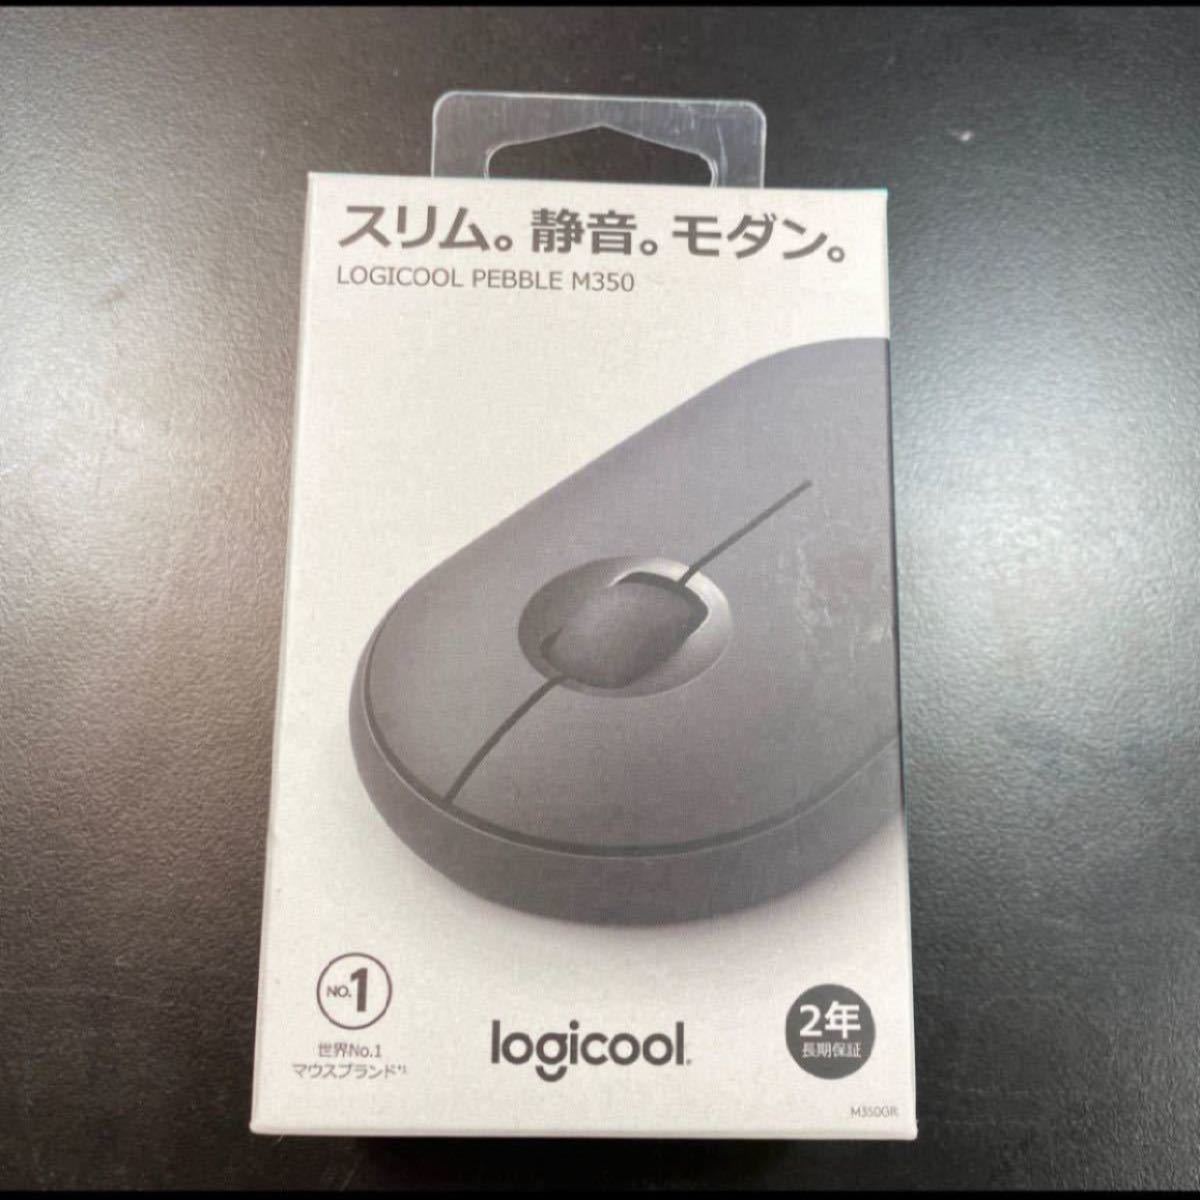 ロジクール Logicool M350GR [ロジクール Pebble M350 静音マウス グラファイト]新品未使用品